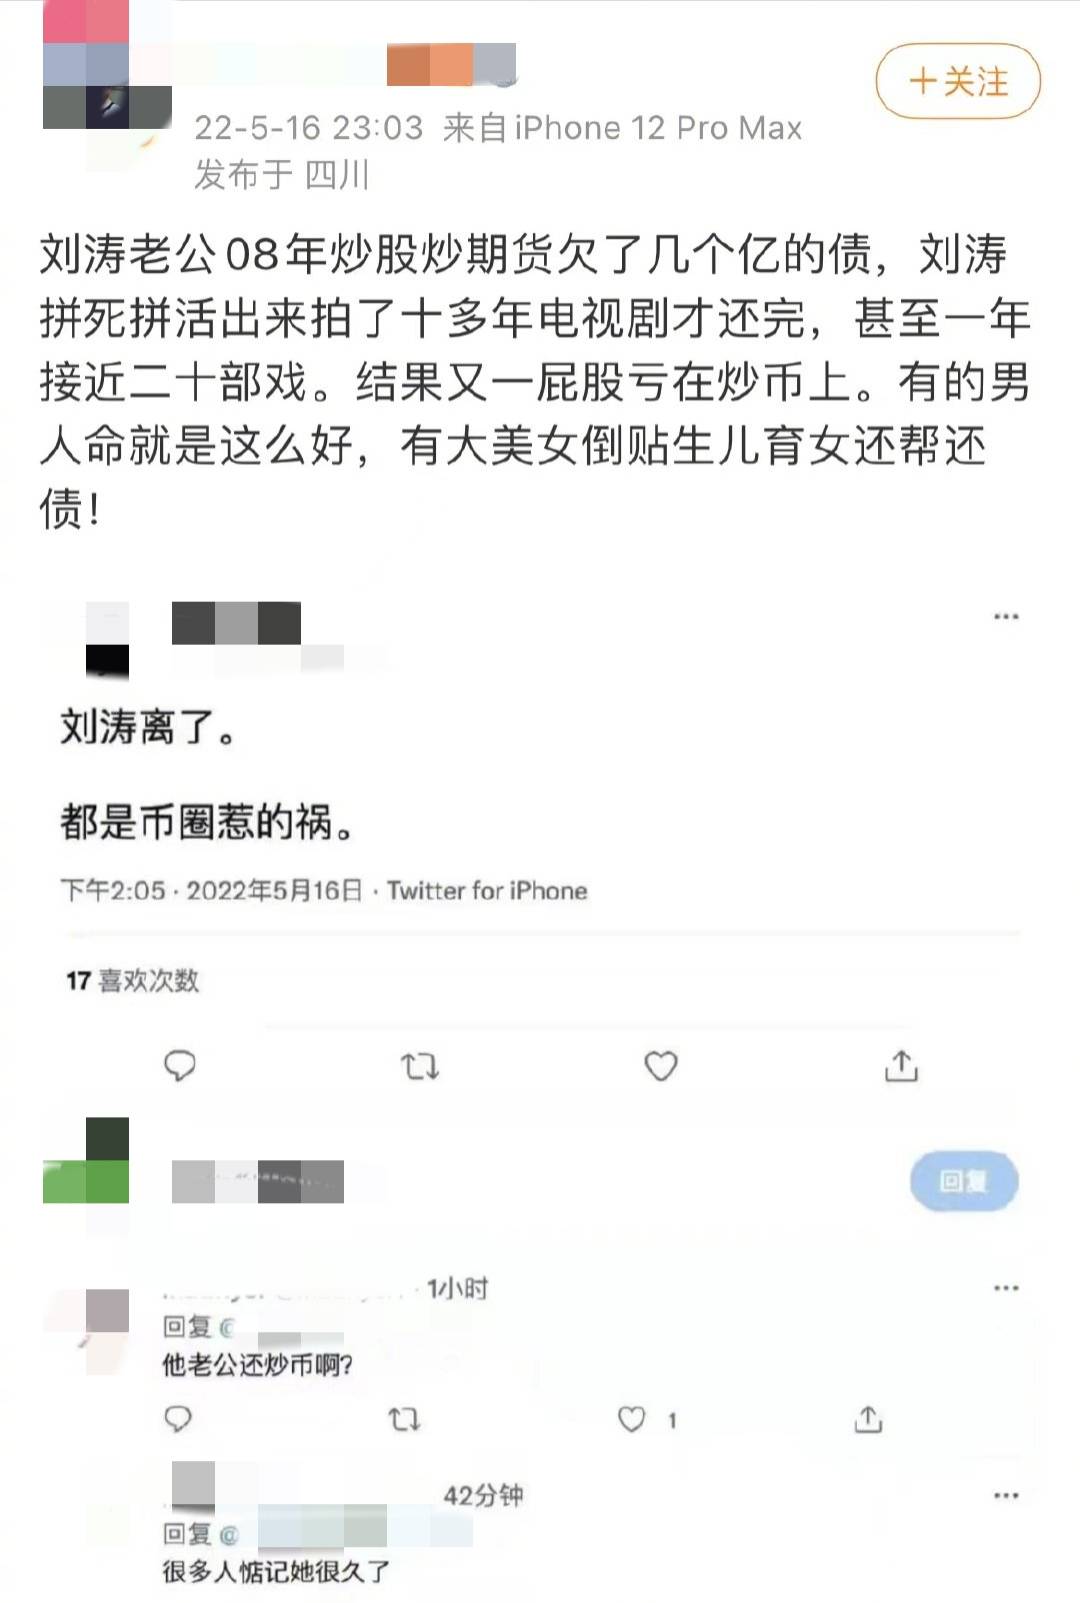 刘涛回应王珂离婚传闻：网络并非法外之地